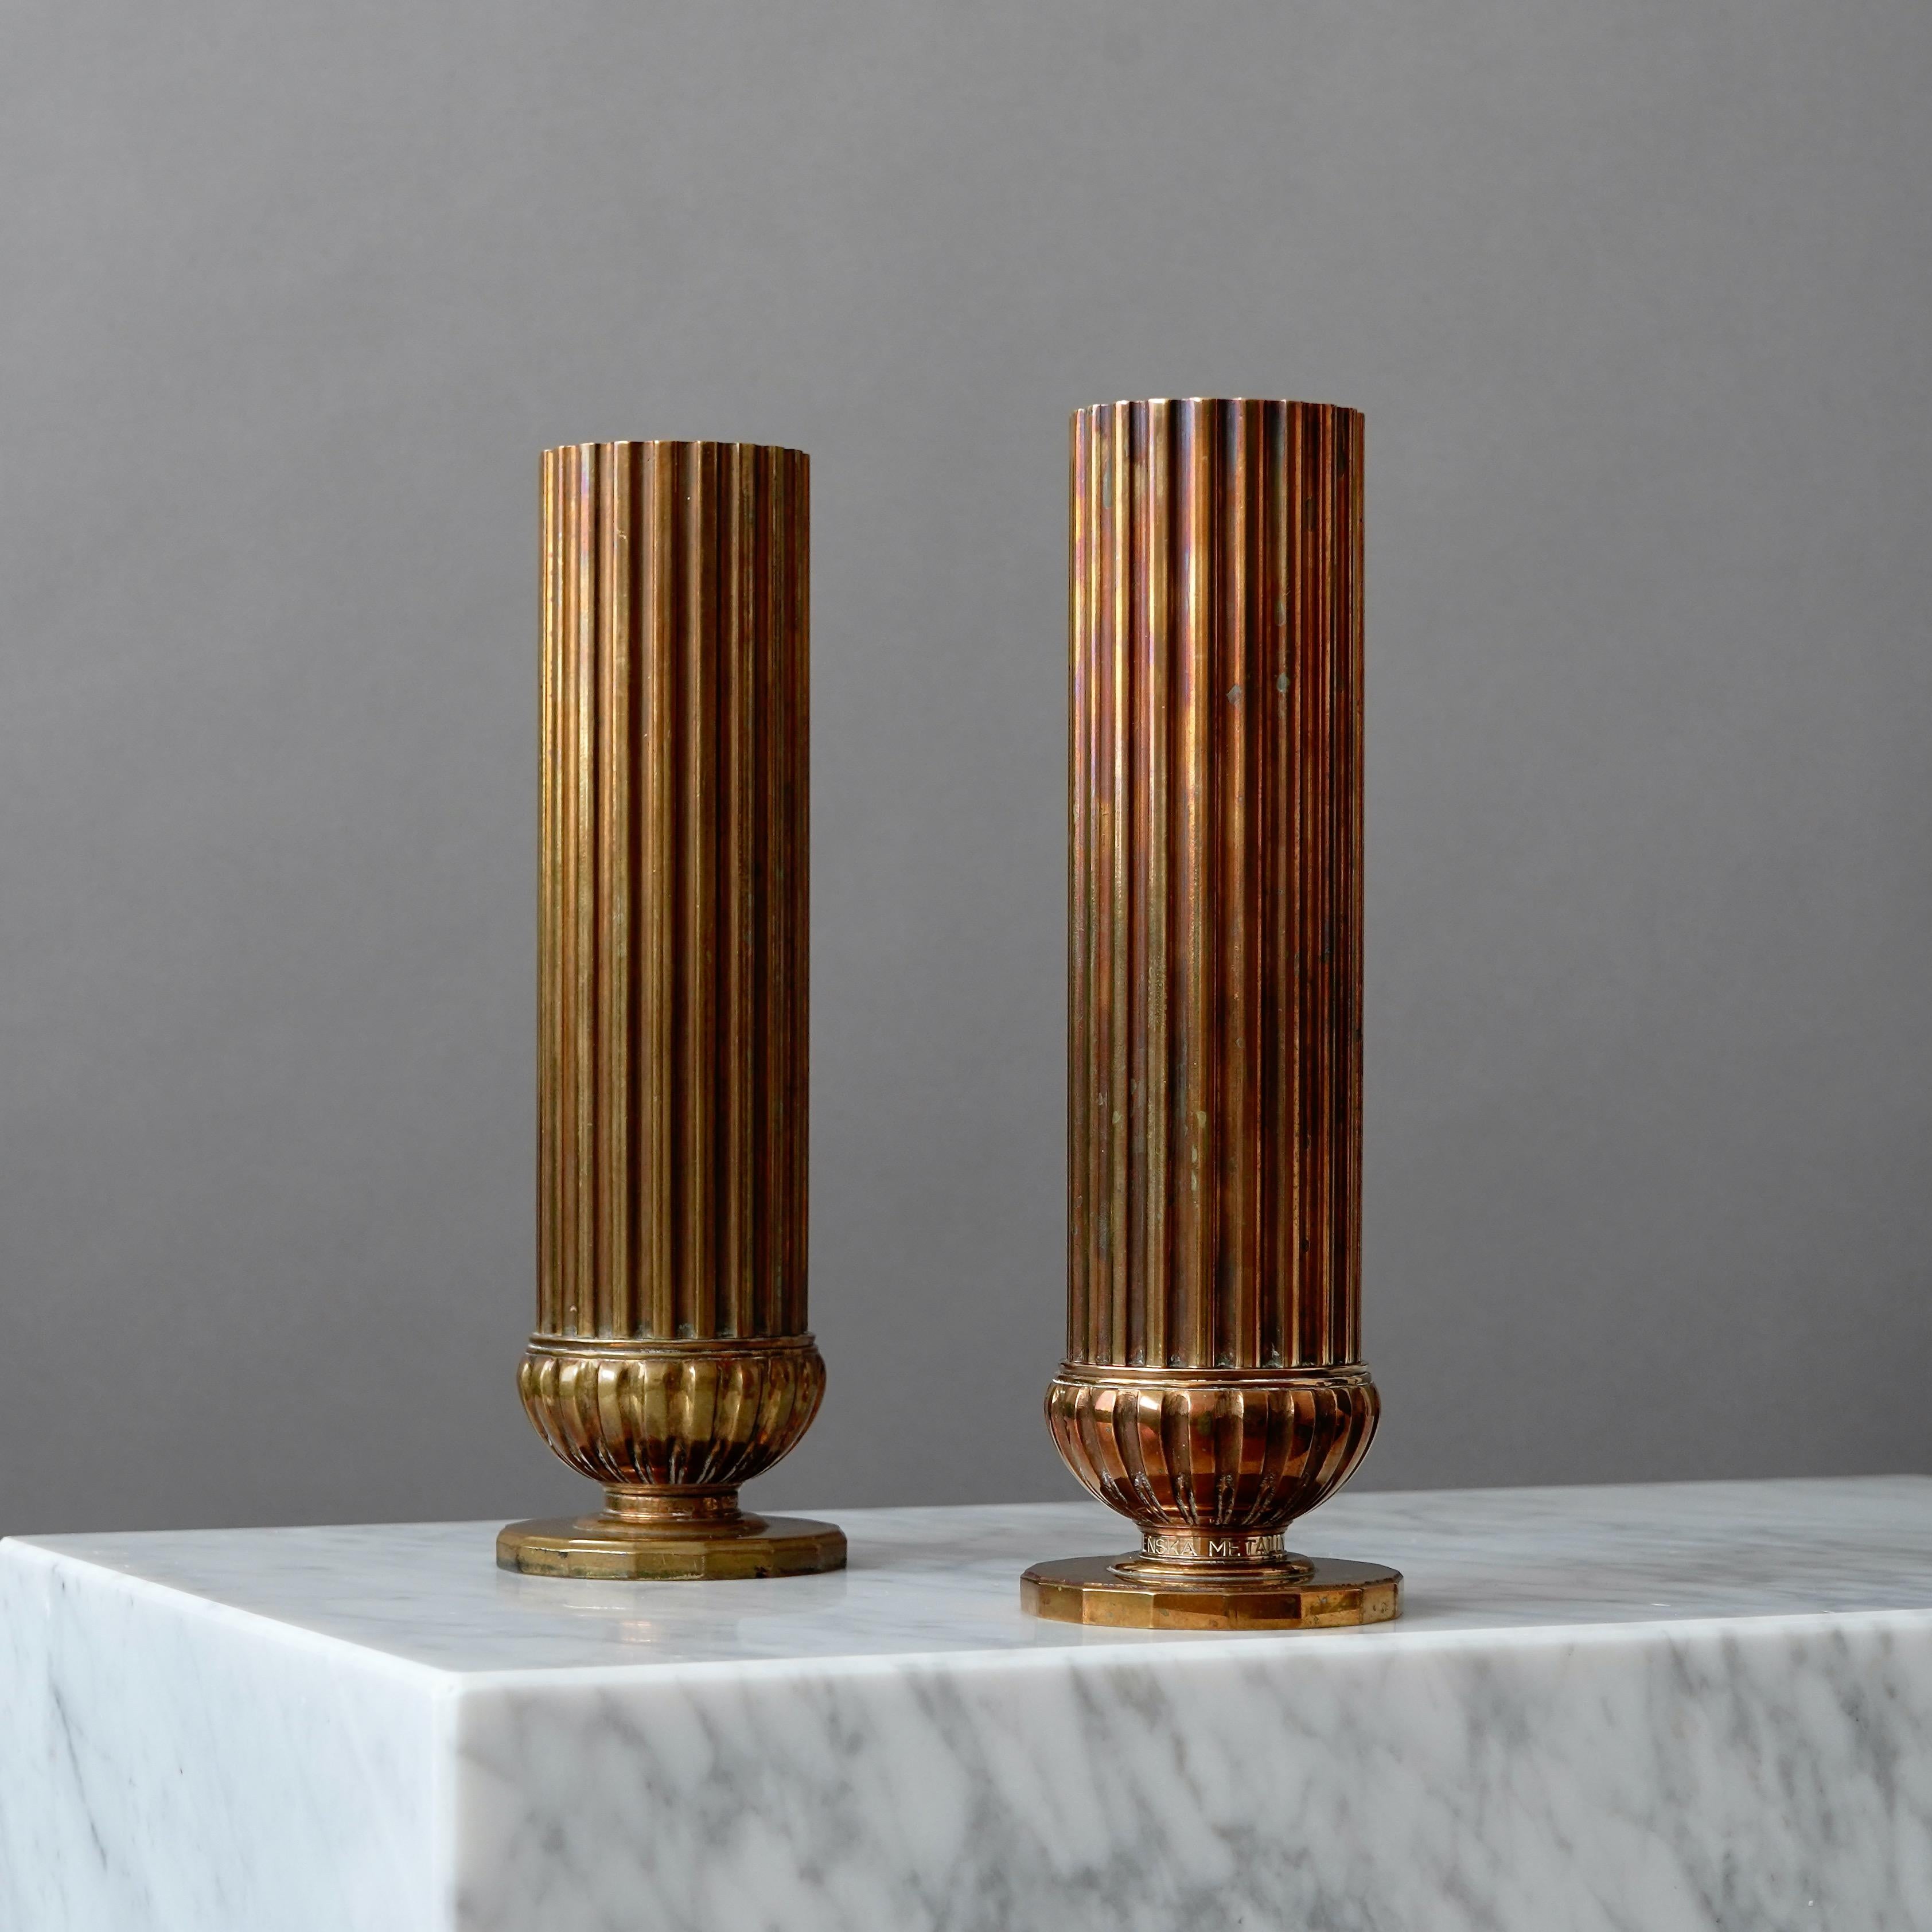 Une paire de vases en bronze art déco avec une patine étonnante. 
Fabriqué par SVM, Svenska Metallverken AB, Suède, années 1930.  

Très bon état, mais avec des inscriptions sur les bases.
Estampillé 